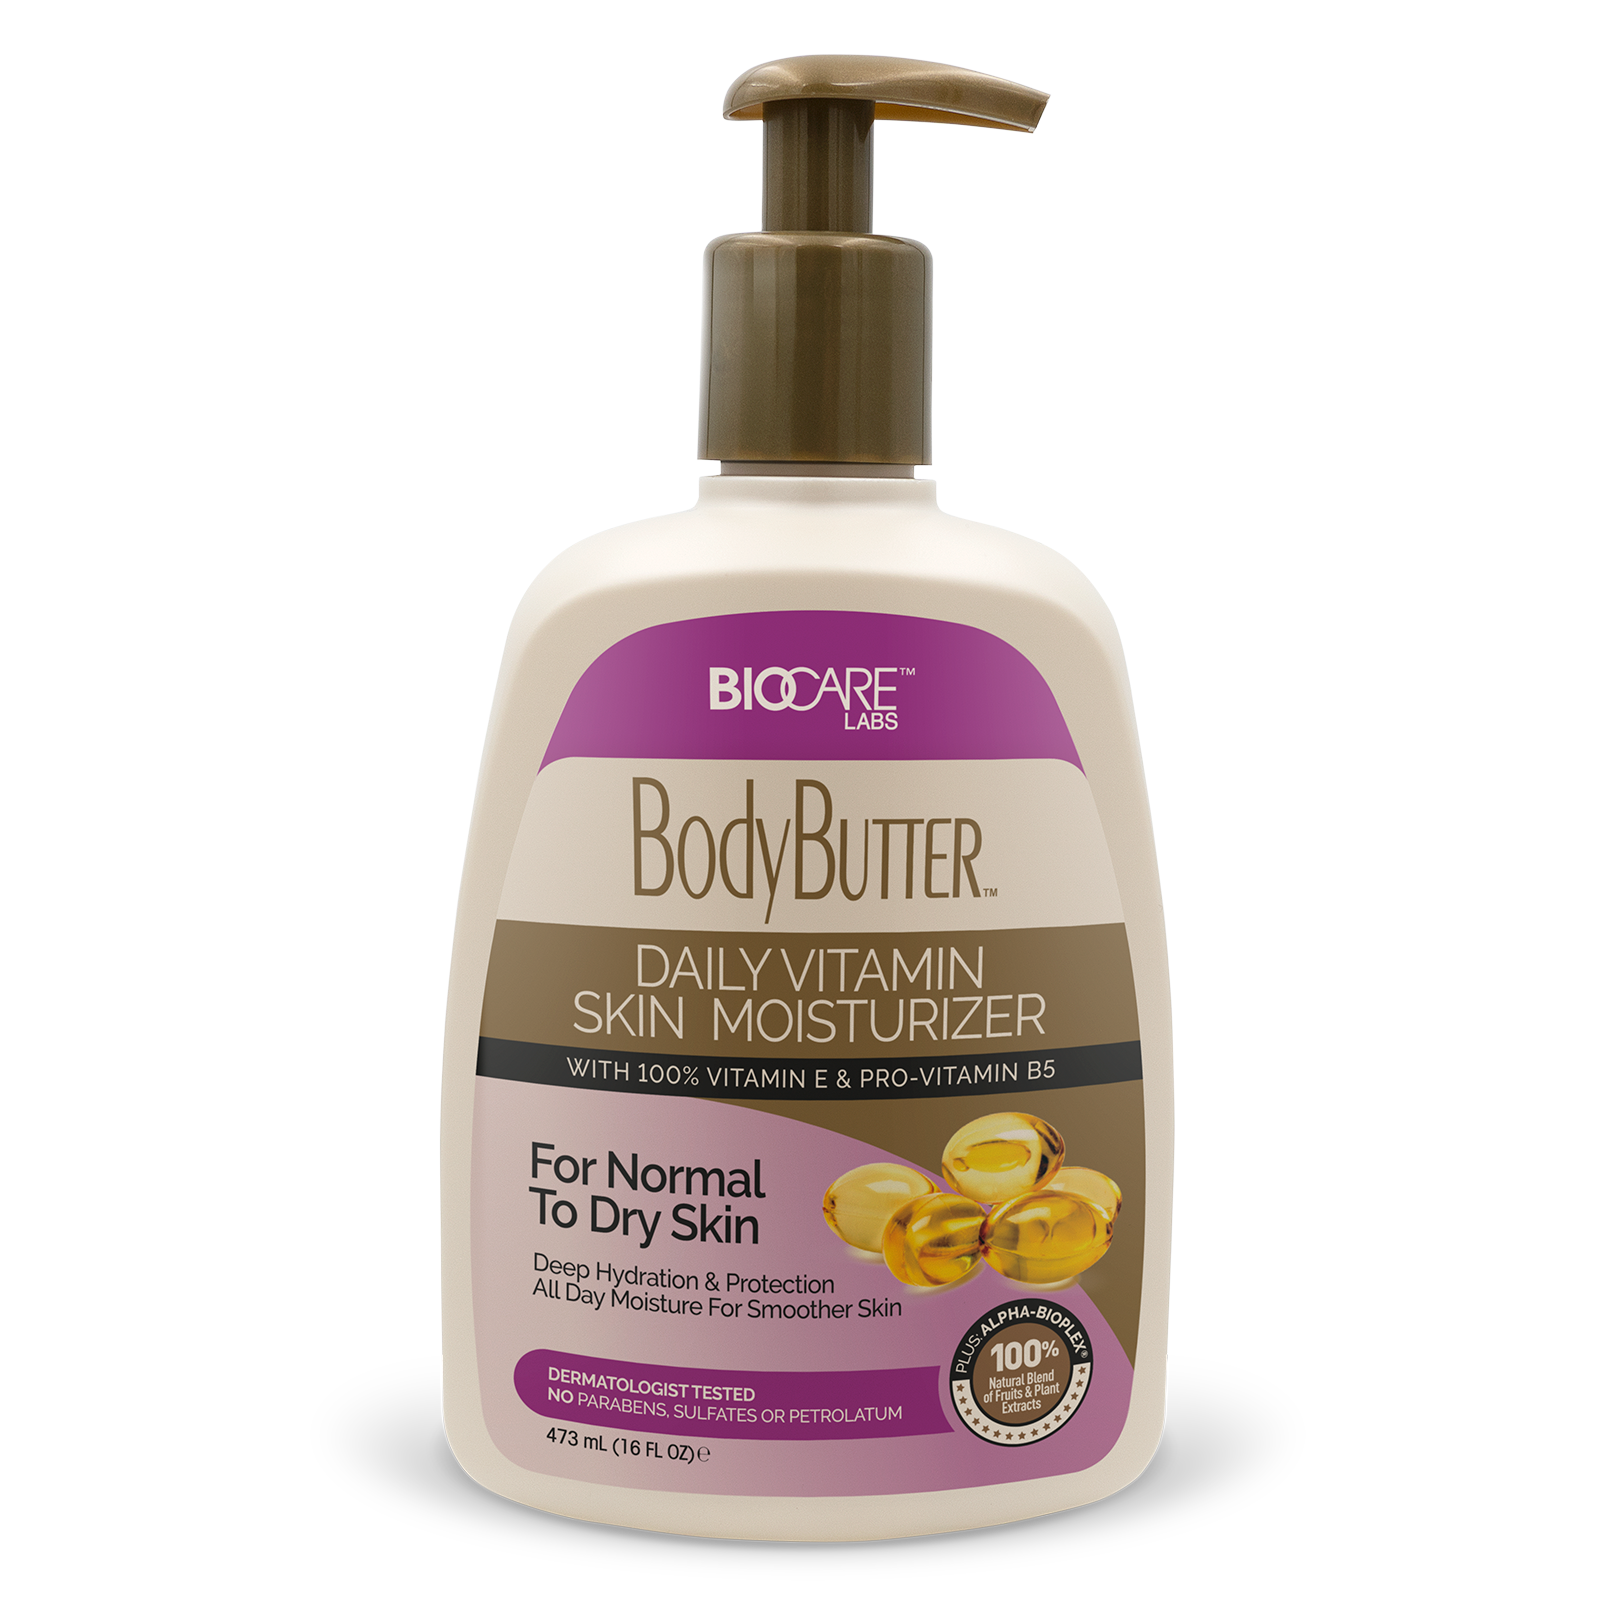  16 oz container of BodyButter™ With Vitamin E & Pro-Vitamin B5